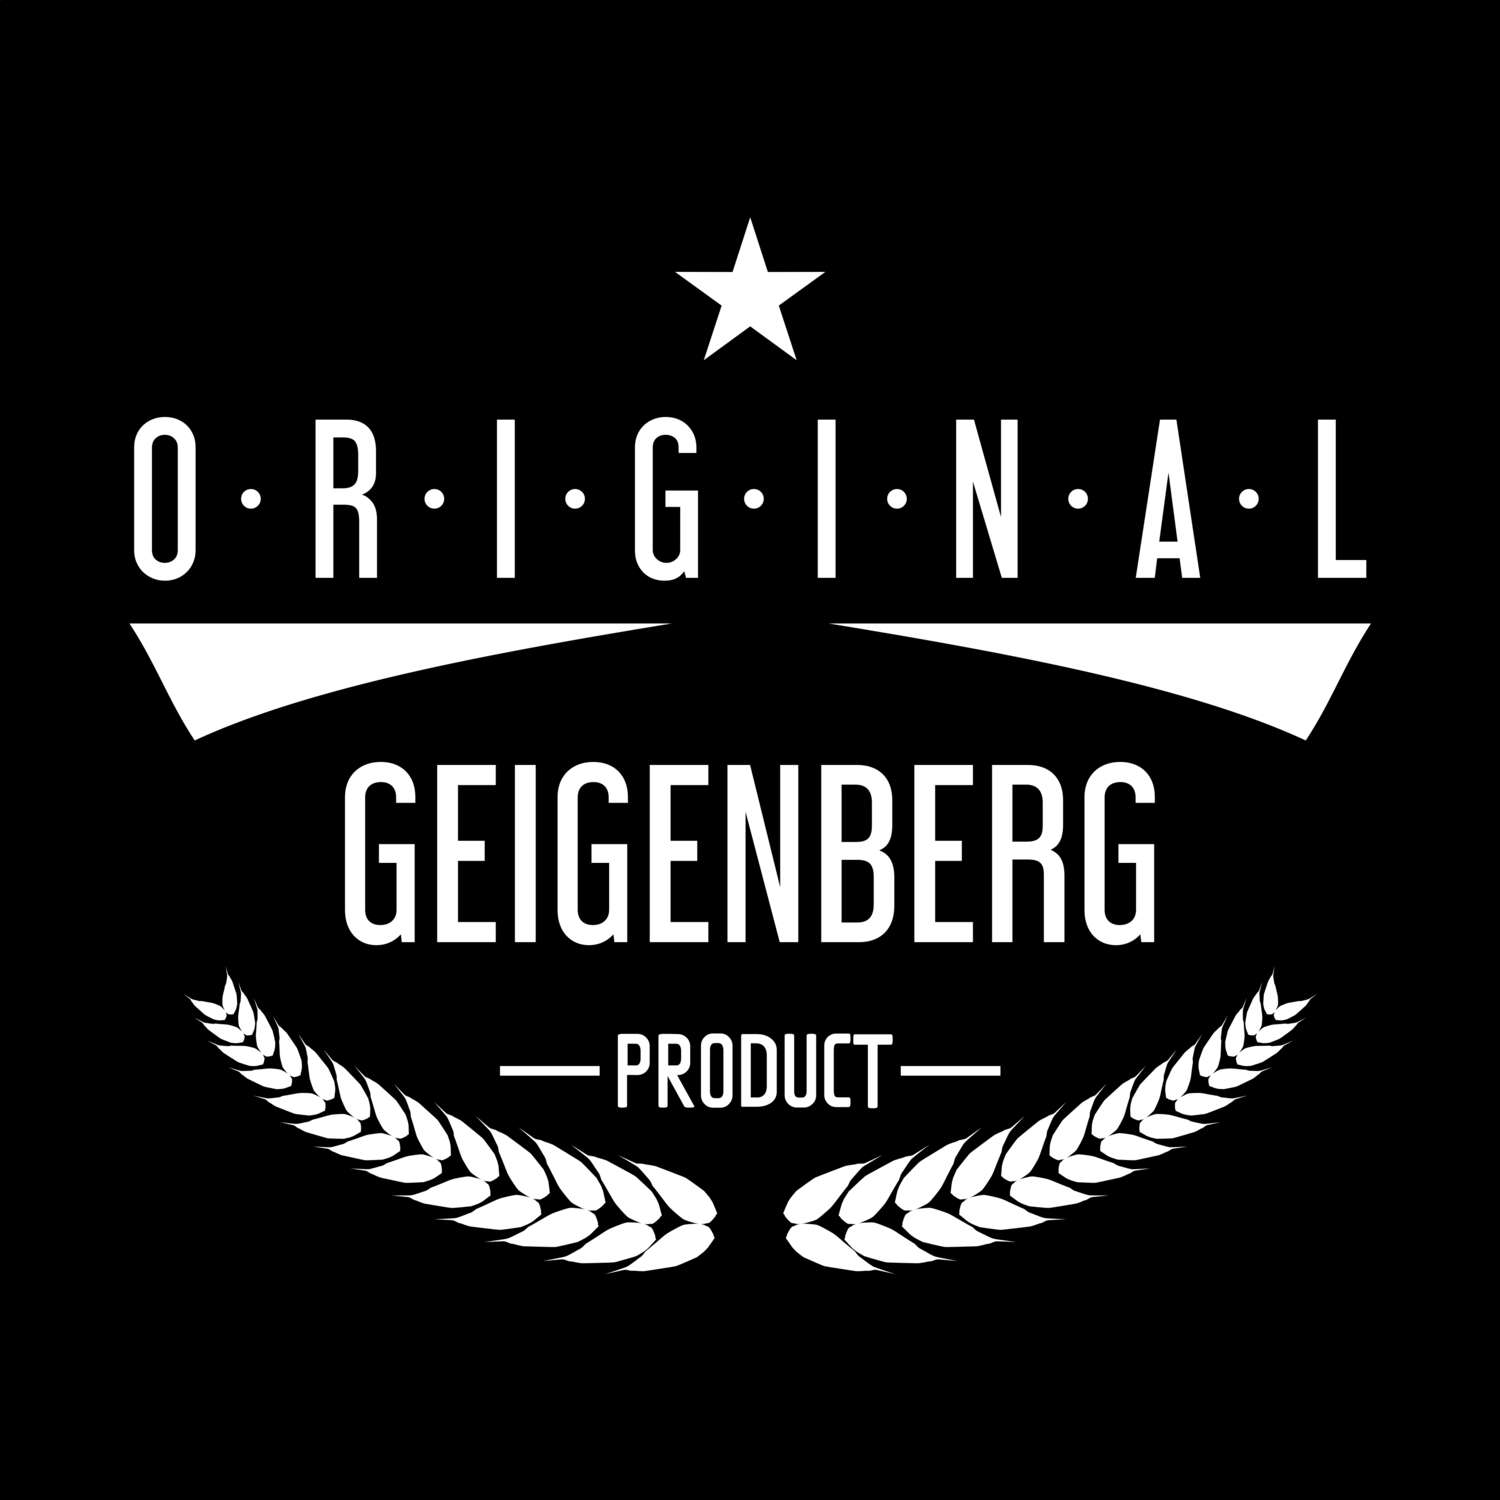 Geigenberg T-Shirt »Original Product«